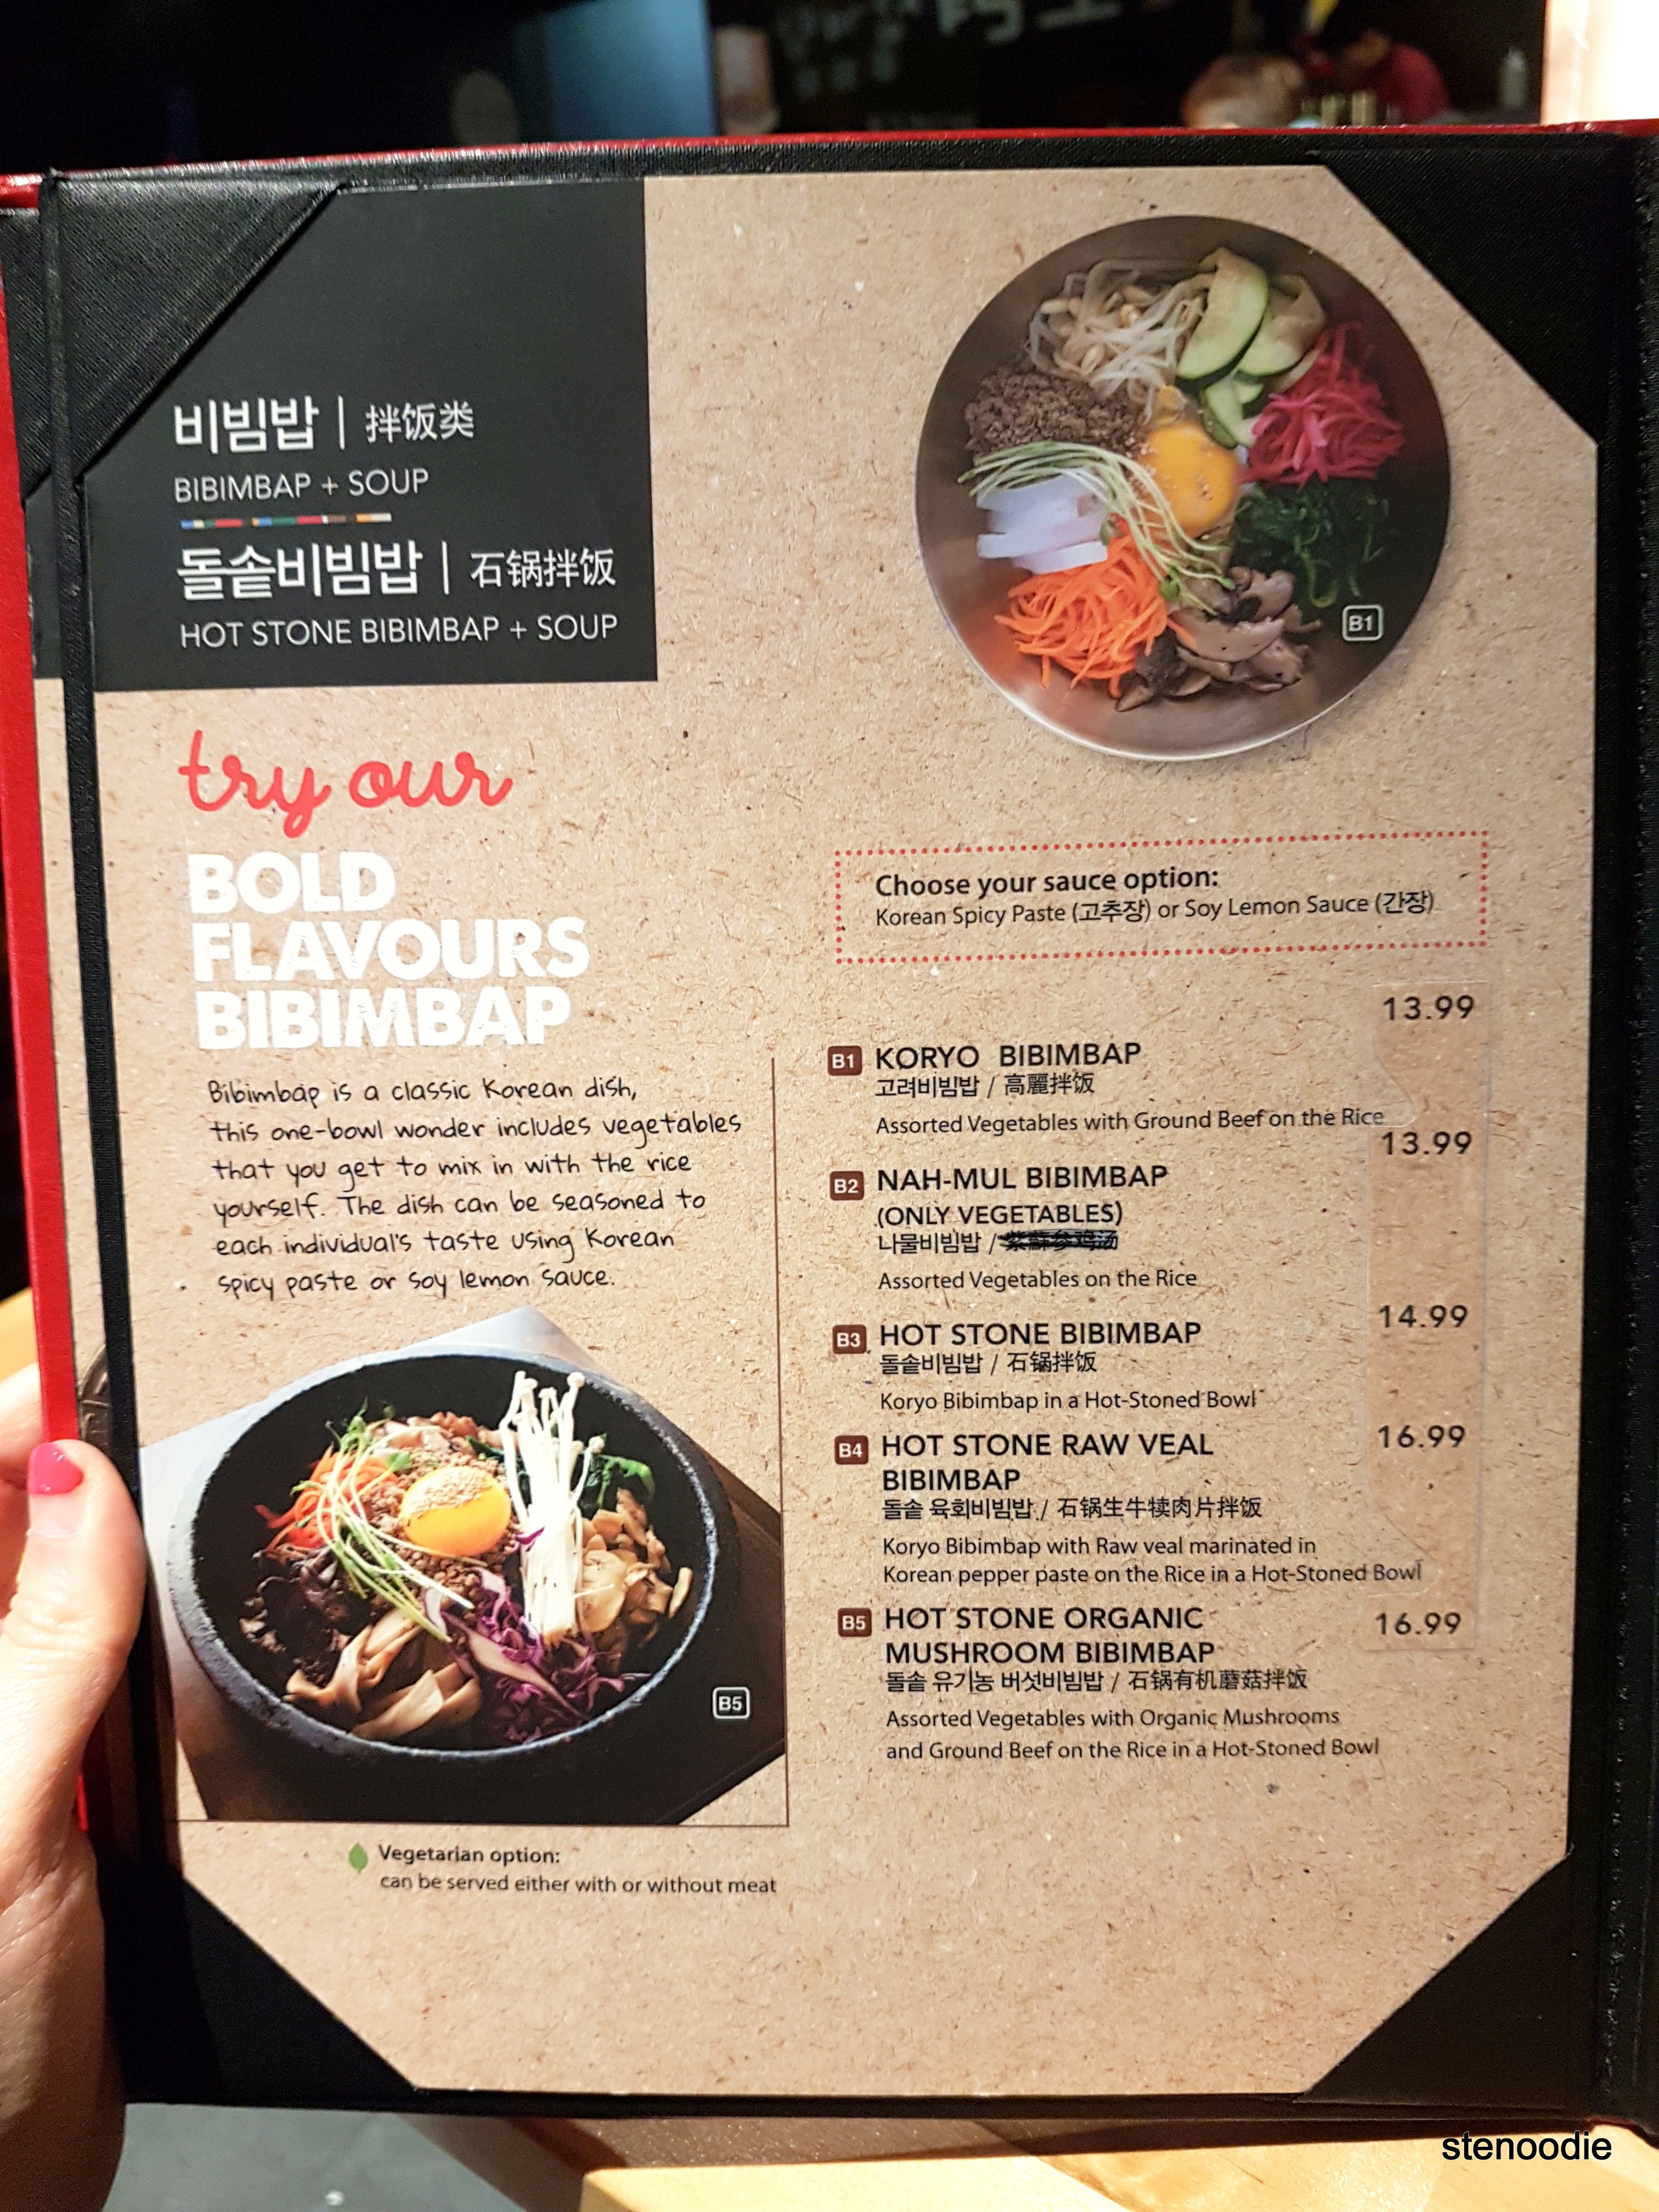 Koryo Samgyetang menu and prices